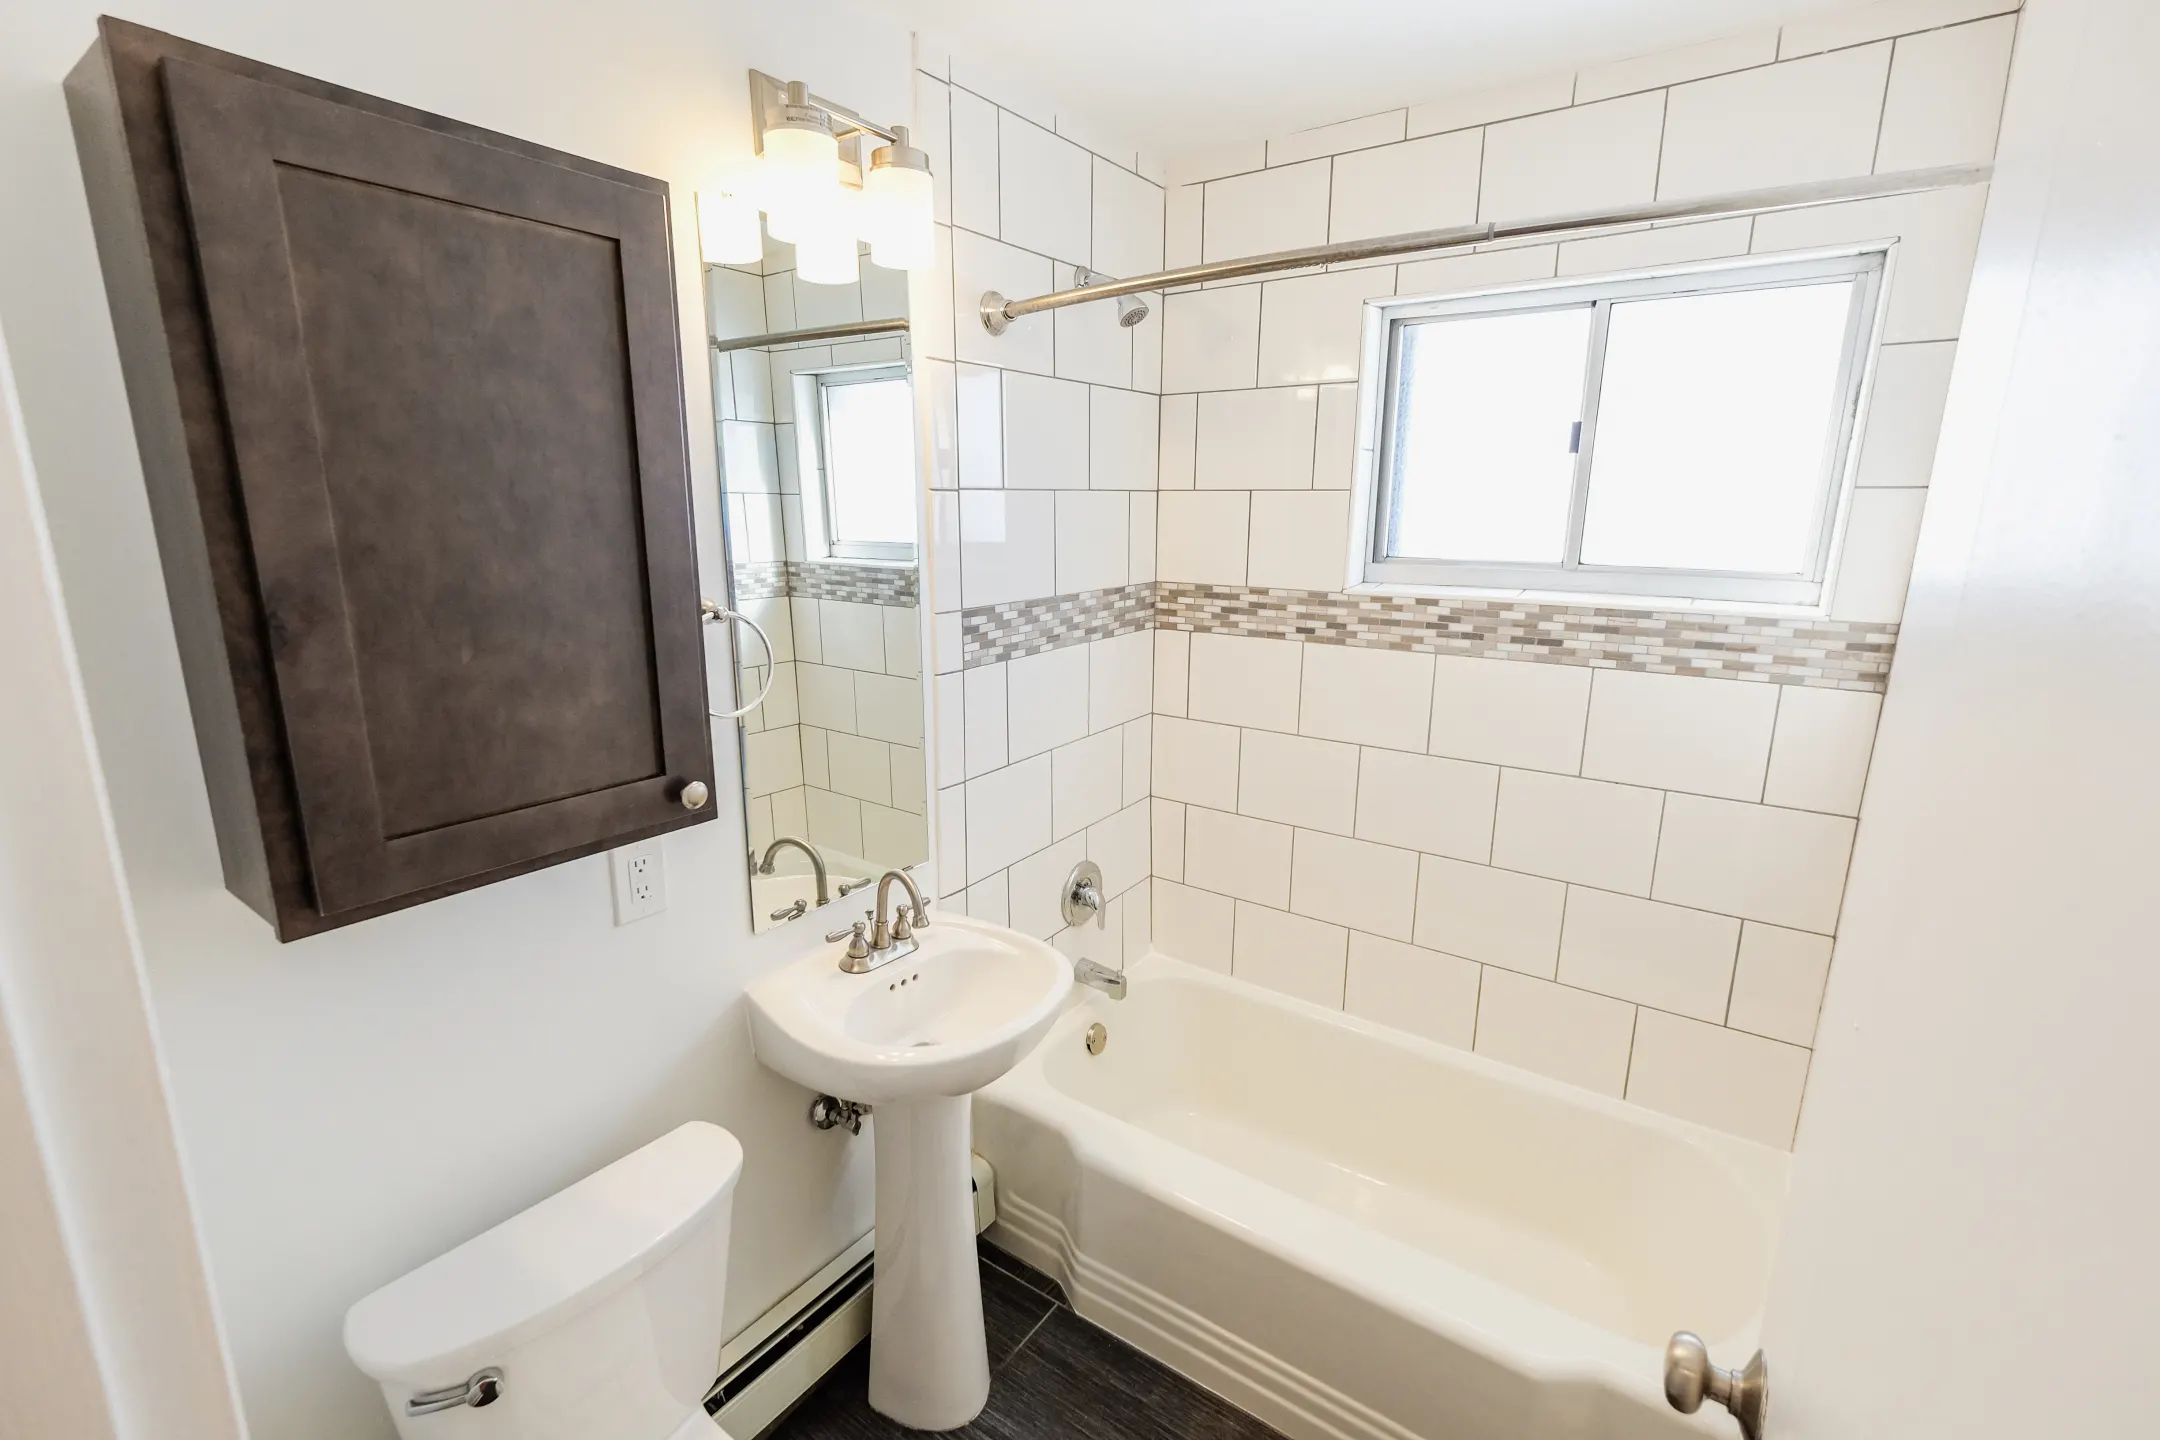 Bathroom - YG Flats - Saint Paul, MN